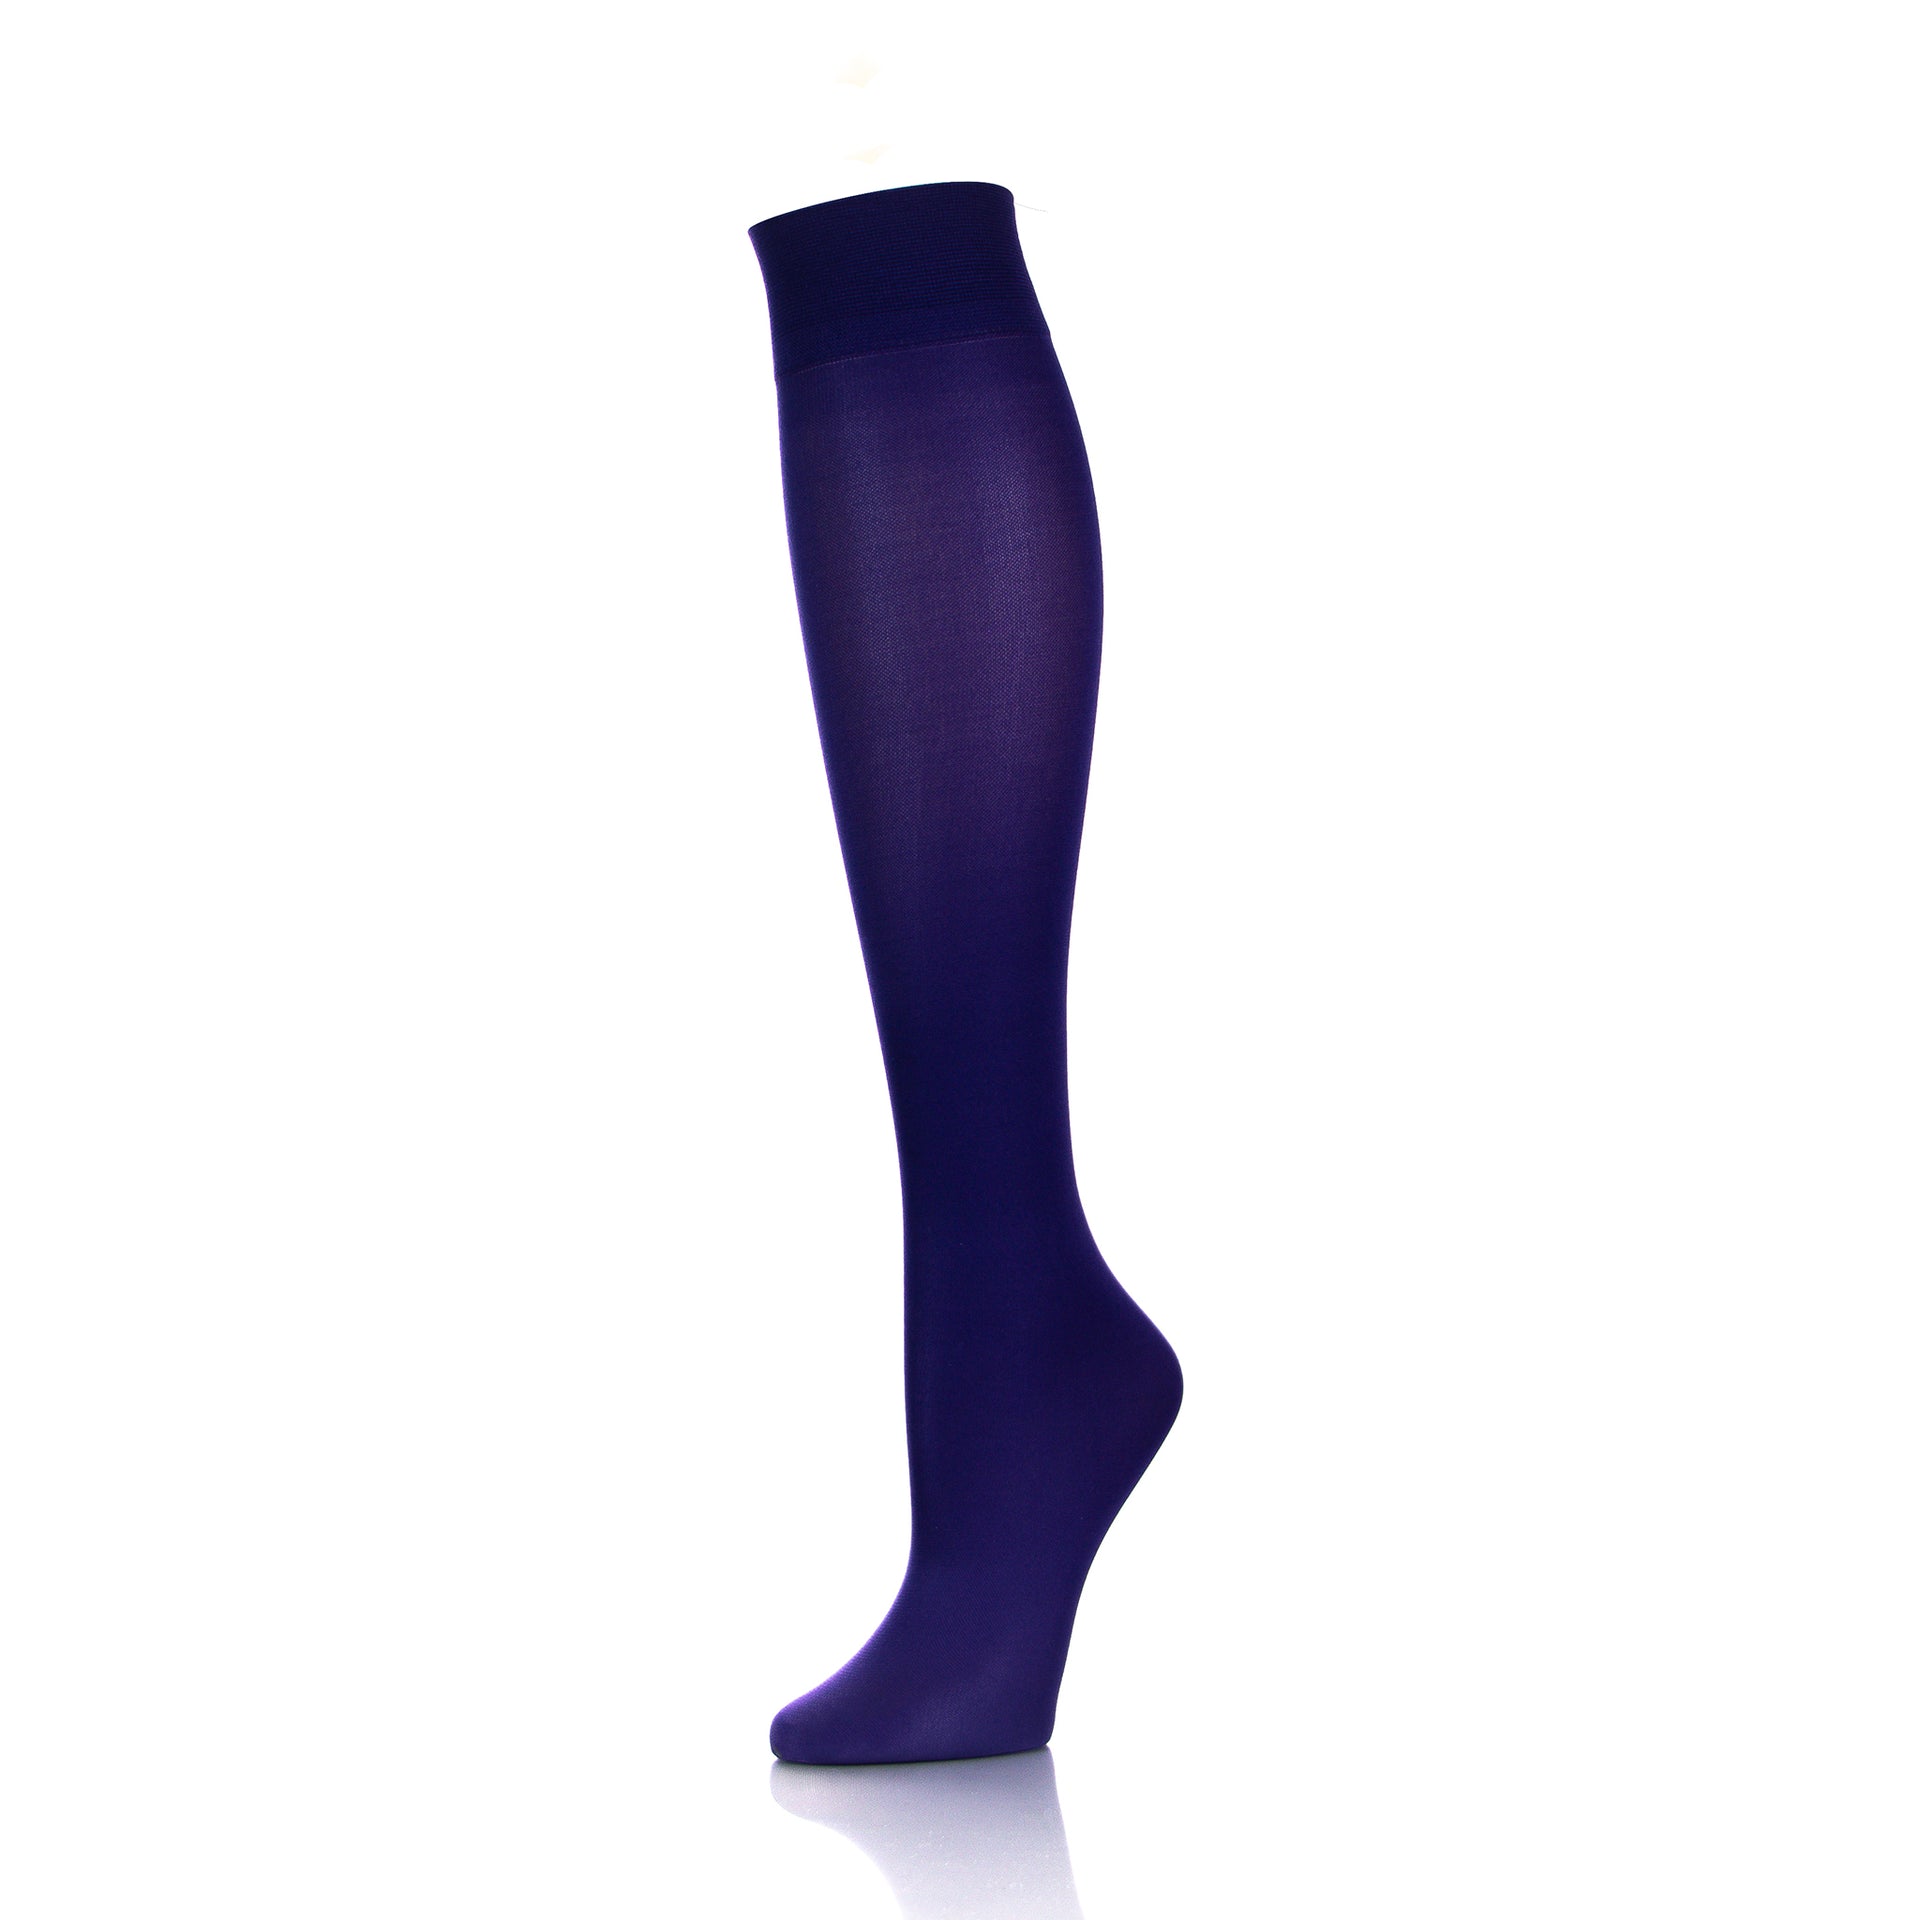 Vue complète des bas de compression hauteur genou pour femme en violet, alliant esthétique et bien-être - Softmedi